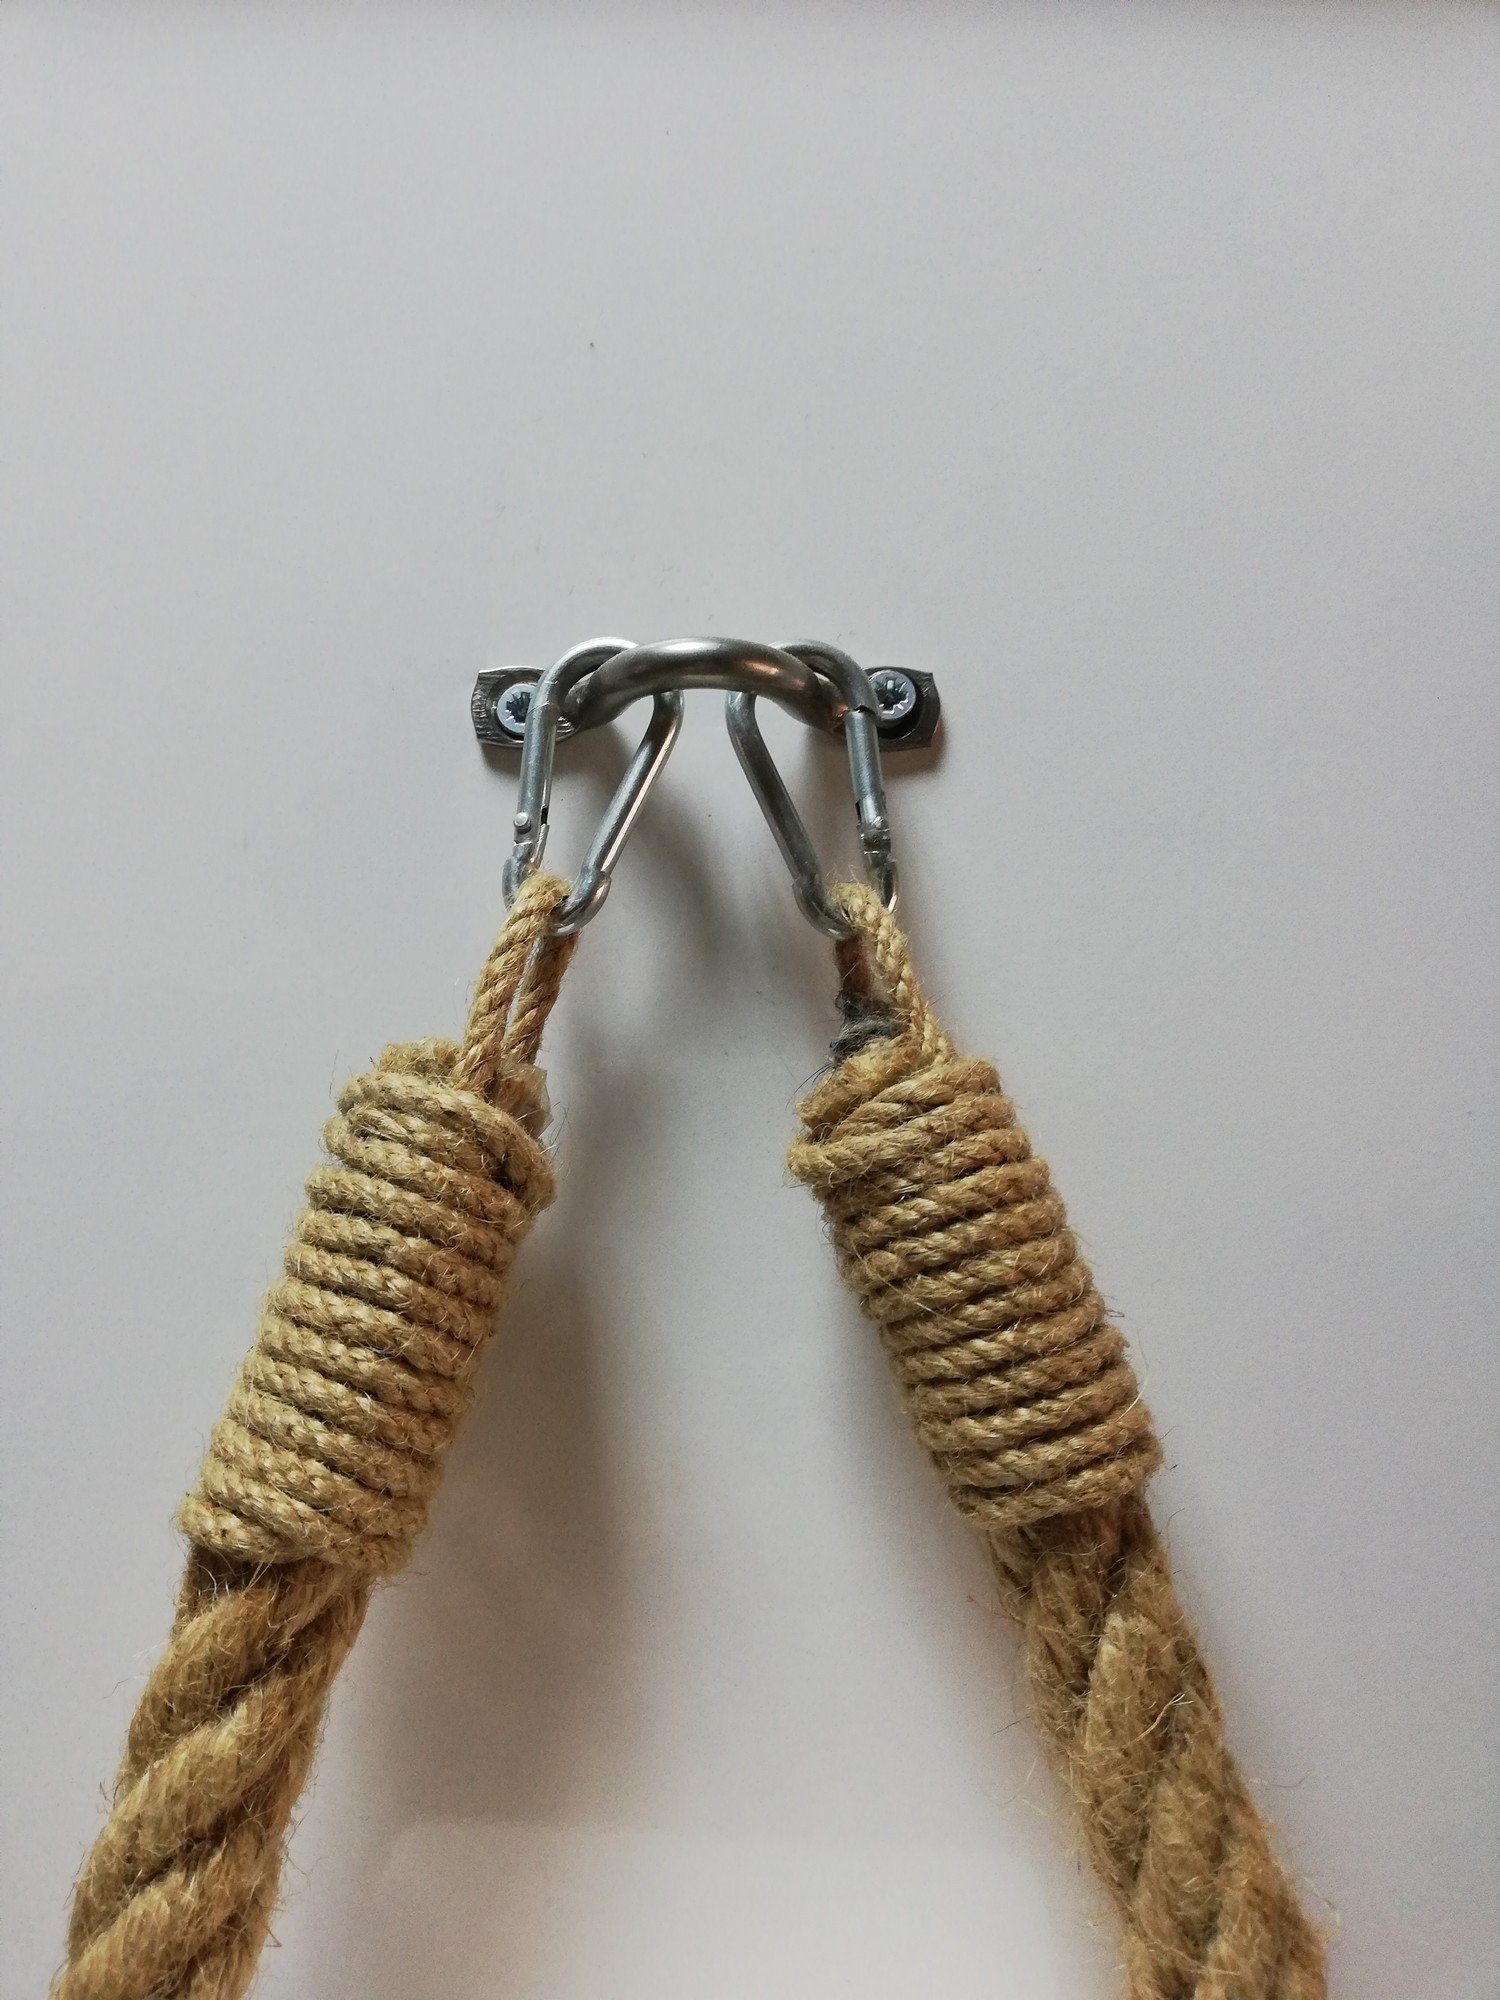 Skye Decor Handtuchhalter haken, 22x14x3 und cm, Metall Seil 100